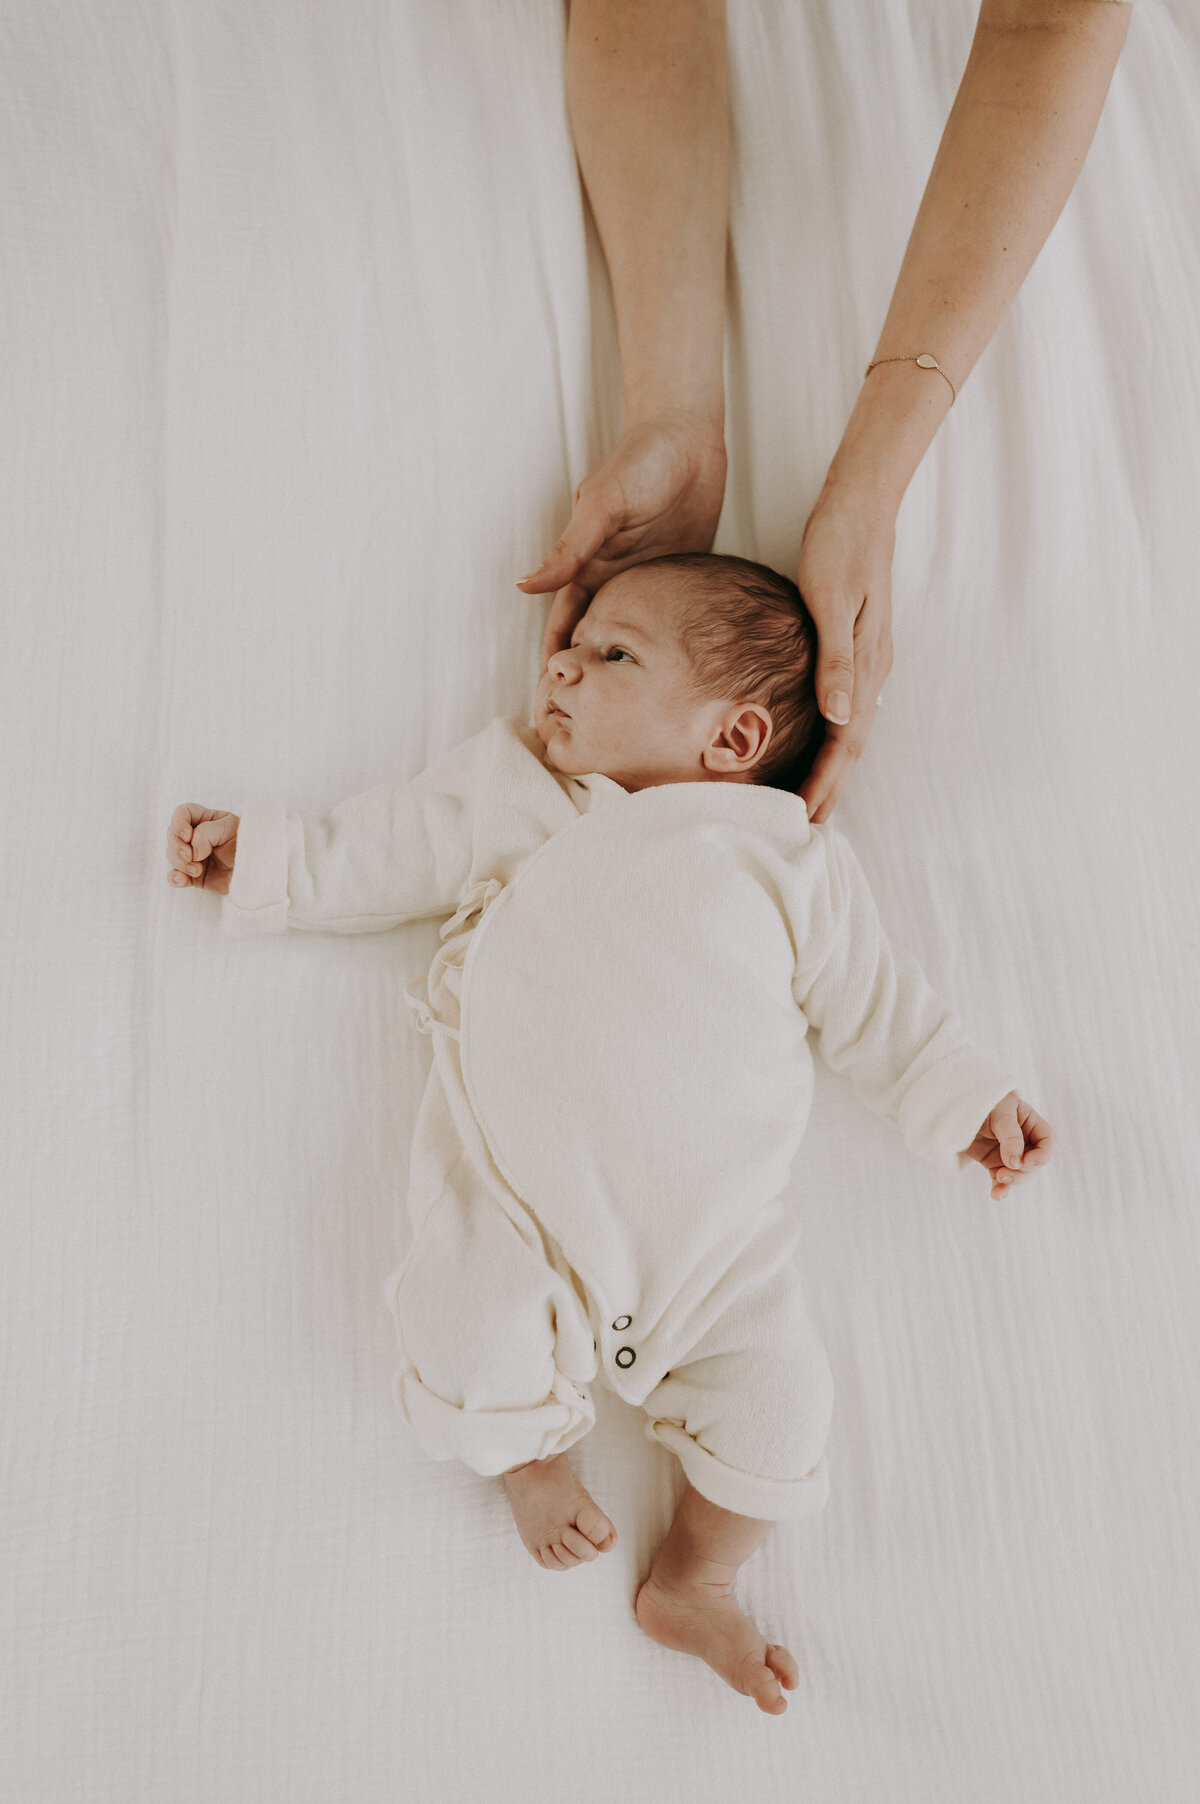 Baby ligt op het bed en ouders houden hem vast met handen.